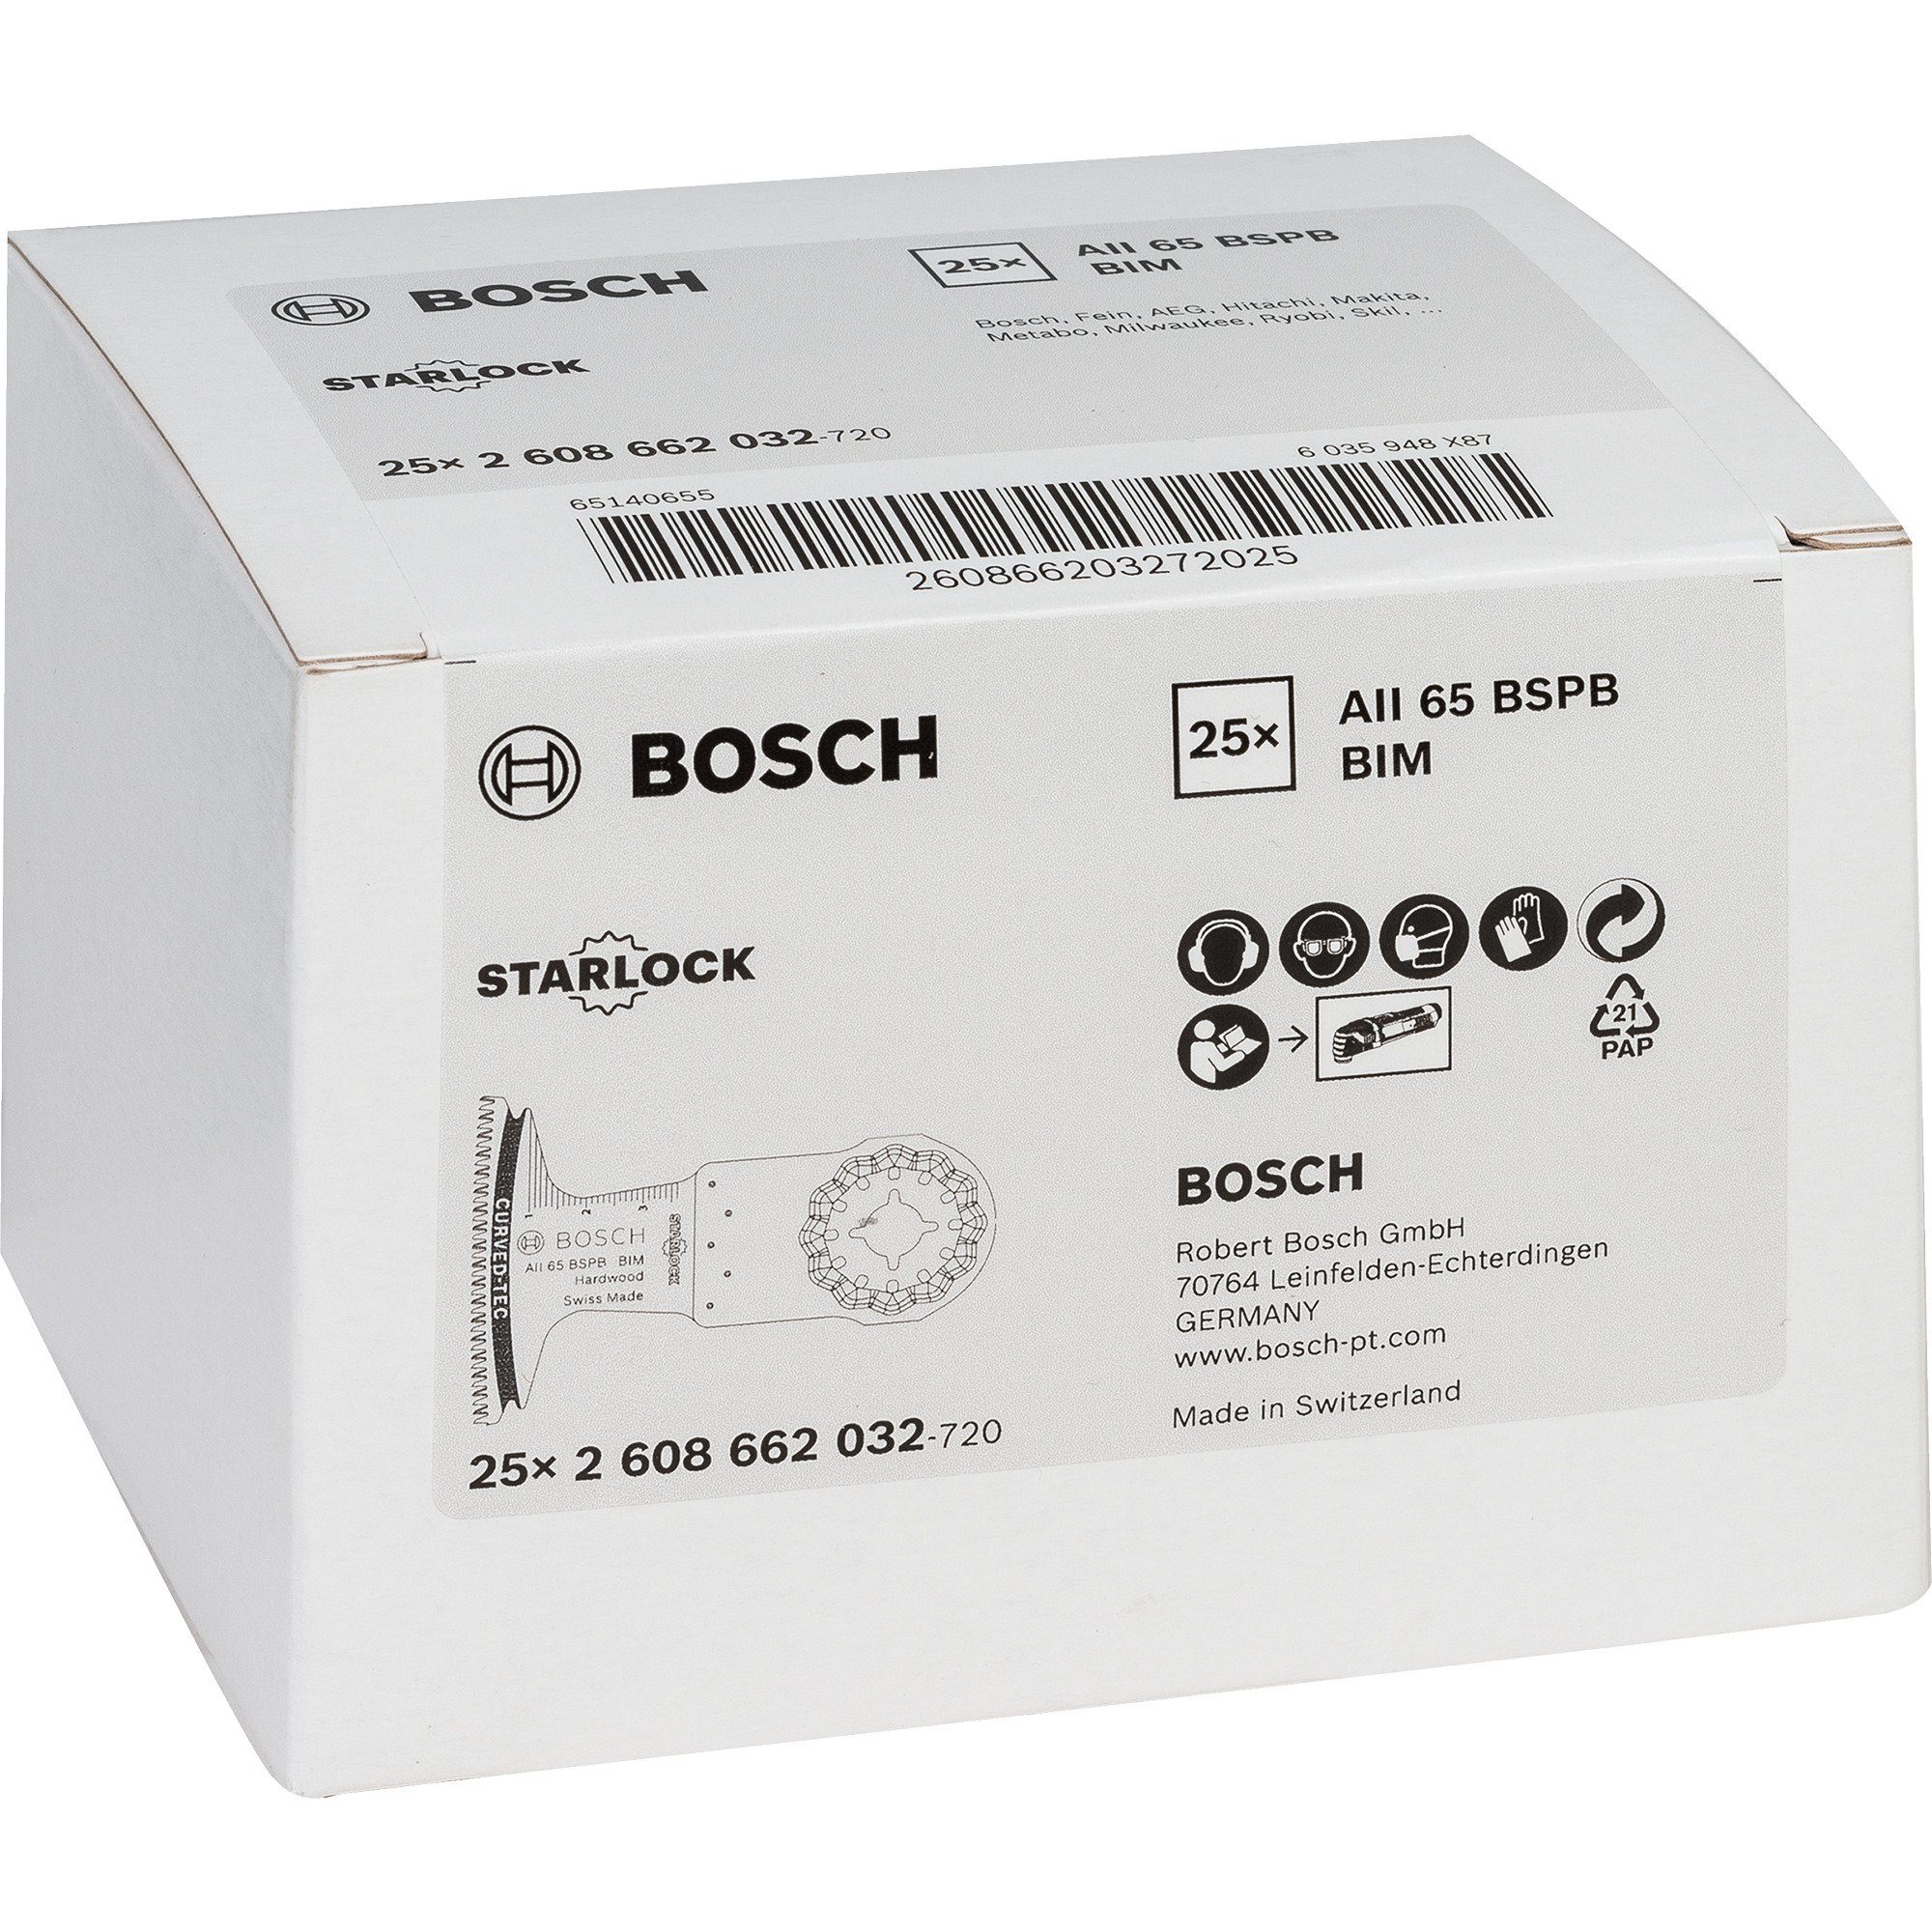 Sägeblatt Tauchsägeblatt Bosch 65 Professional BSPB AII BOSCH